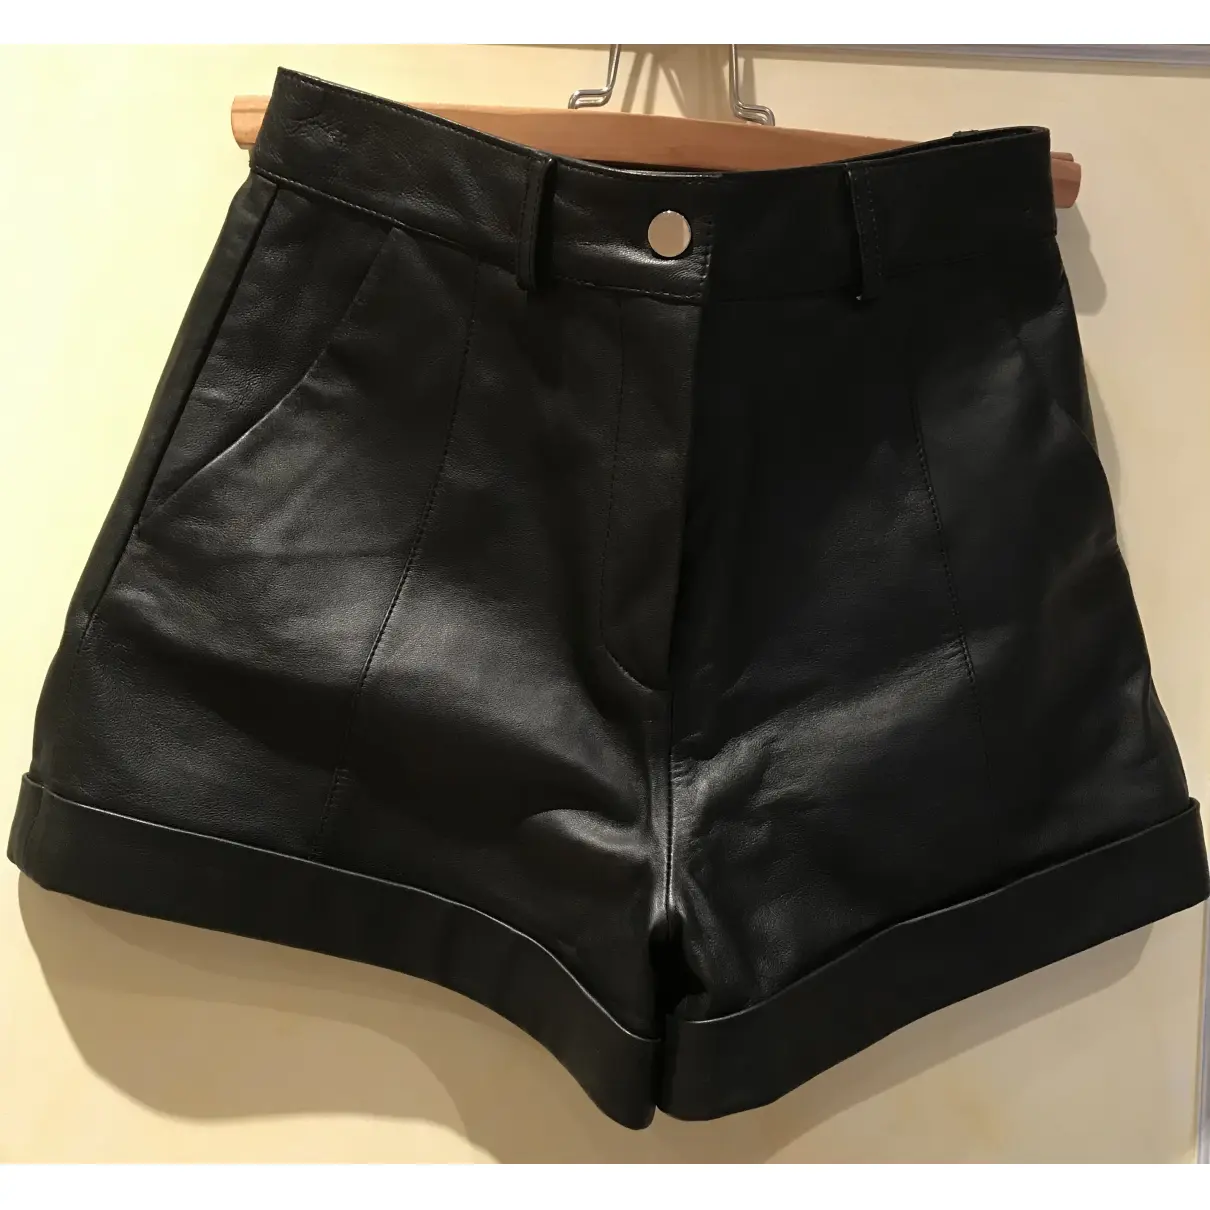 Fall Winter 2020 leather shorts Maje